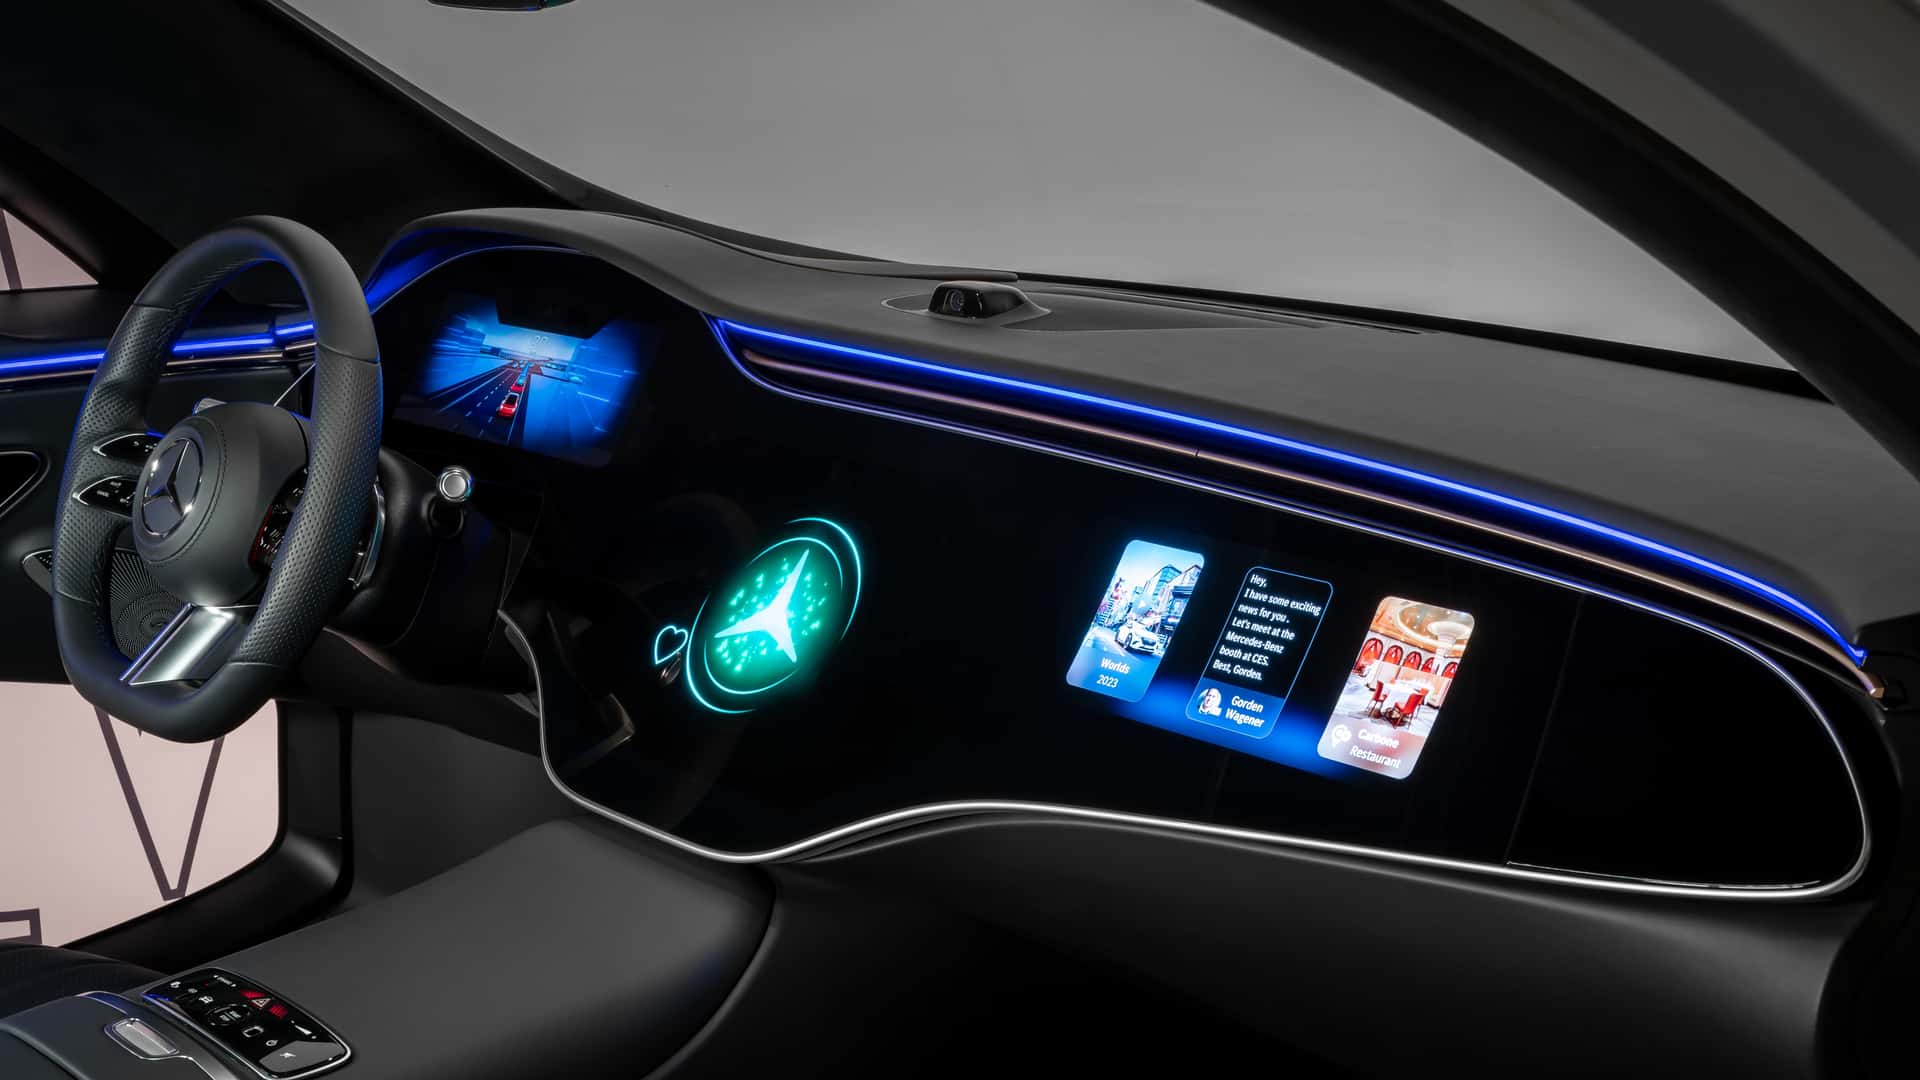 مرسيدس تكشف عن الجيل الجديد من نظام التشغيل لسياراتها بتقنيات مبتكرة جديدة 15